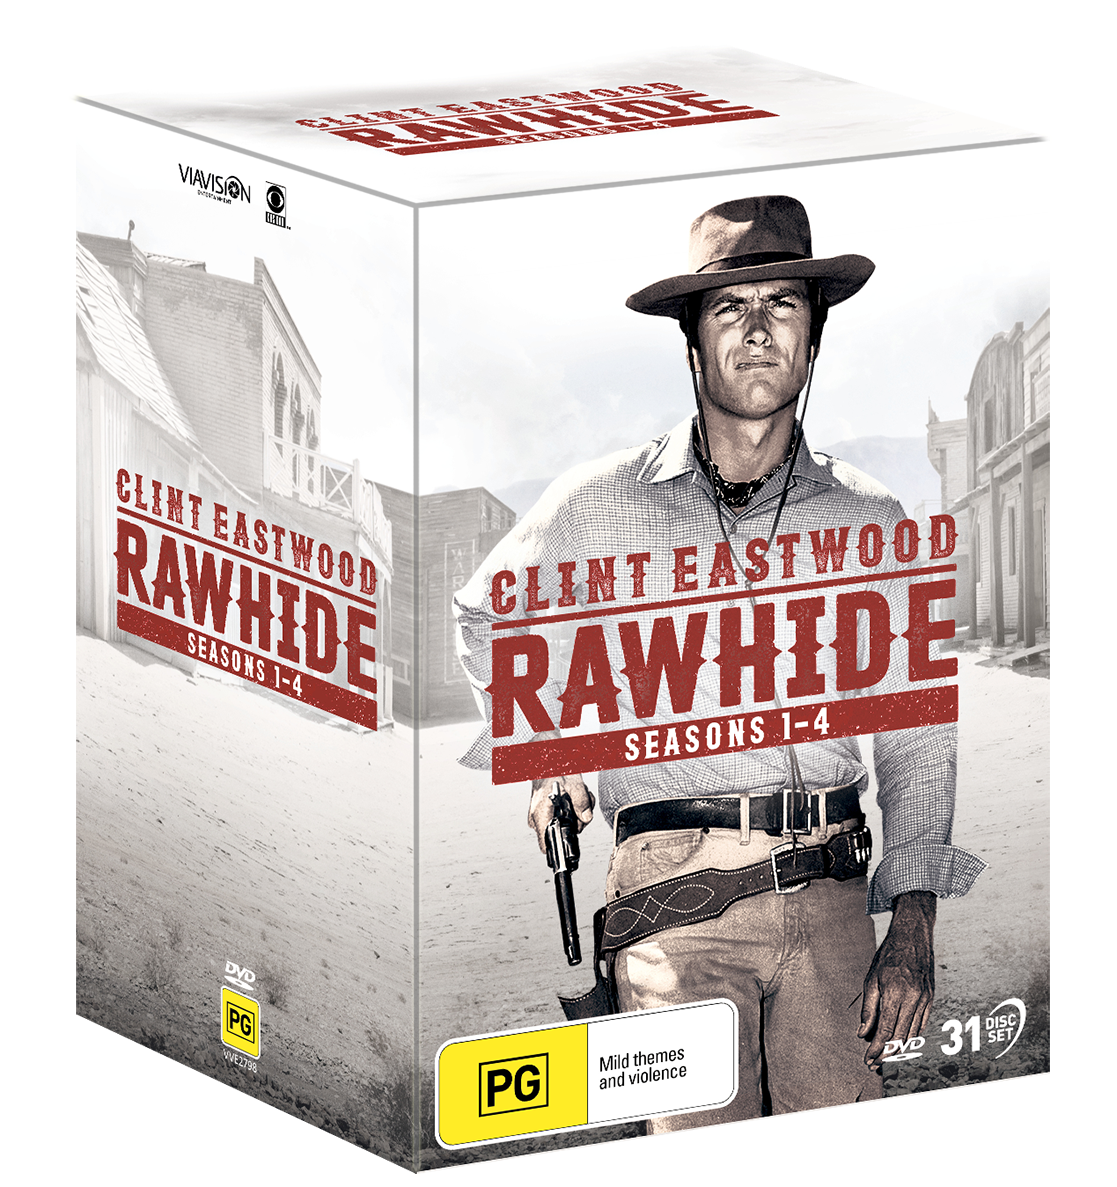 Rawhide - Seasons 1 - 4 | Via Vision Entertainment